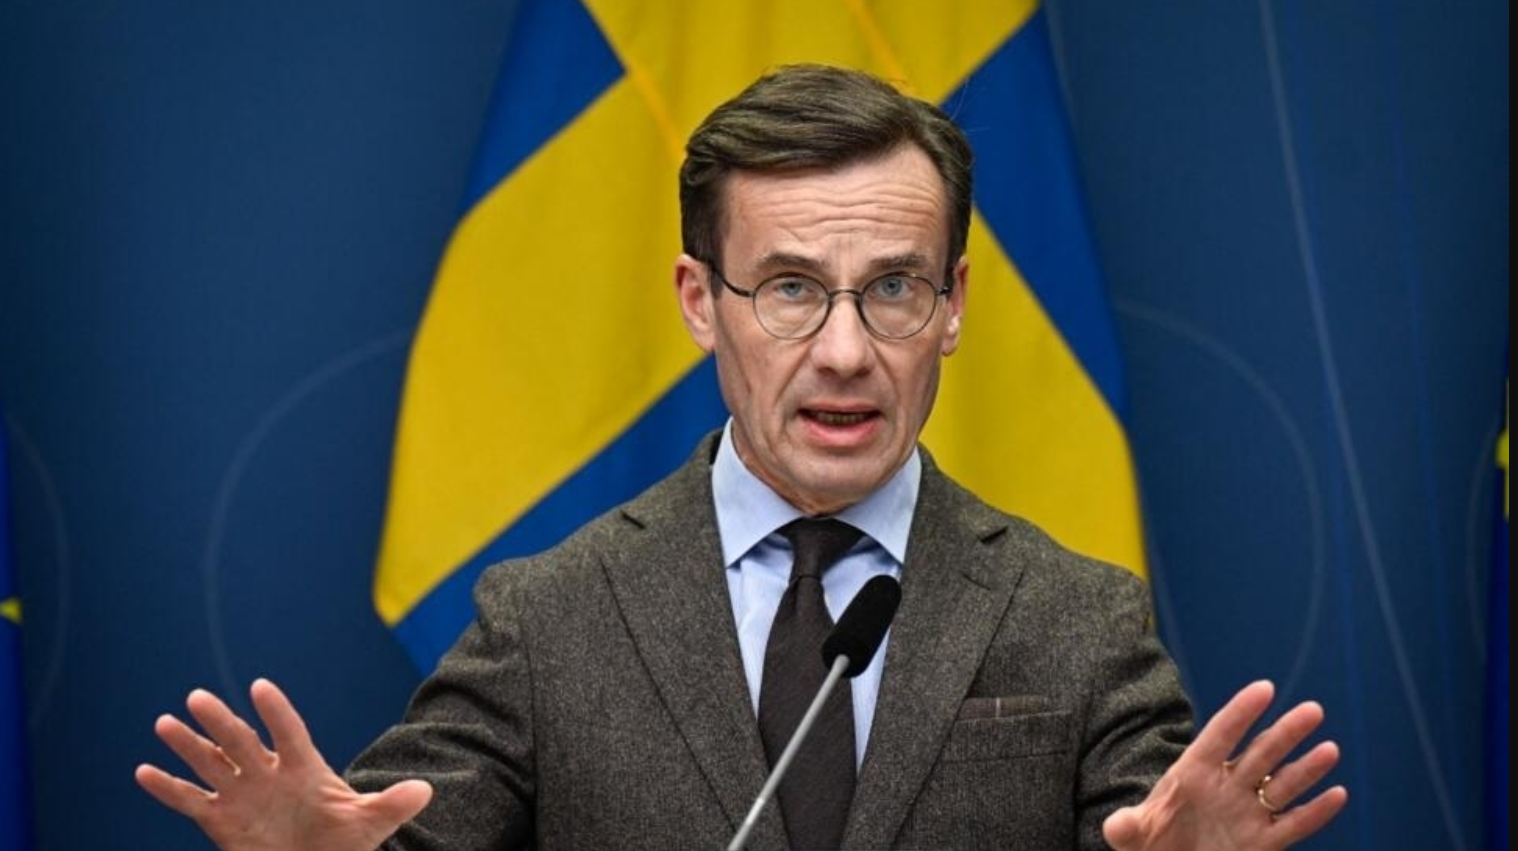 كريسترشون يكشف التحديات الثلاثة الكبرى التي تهدد السويد